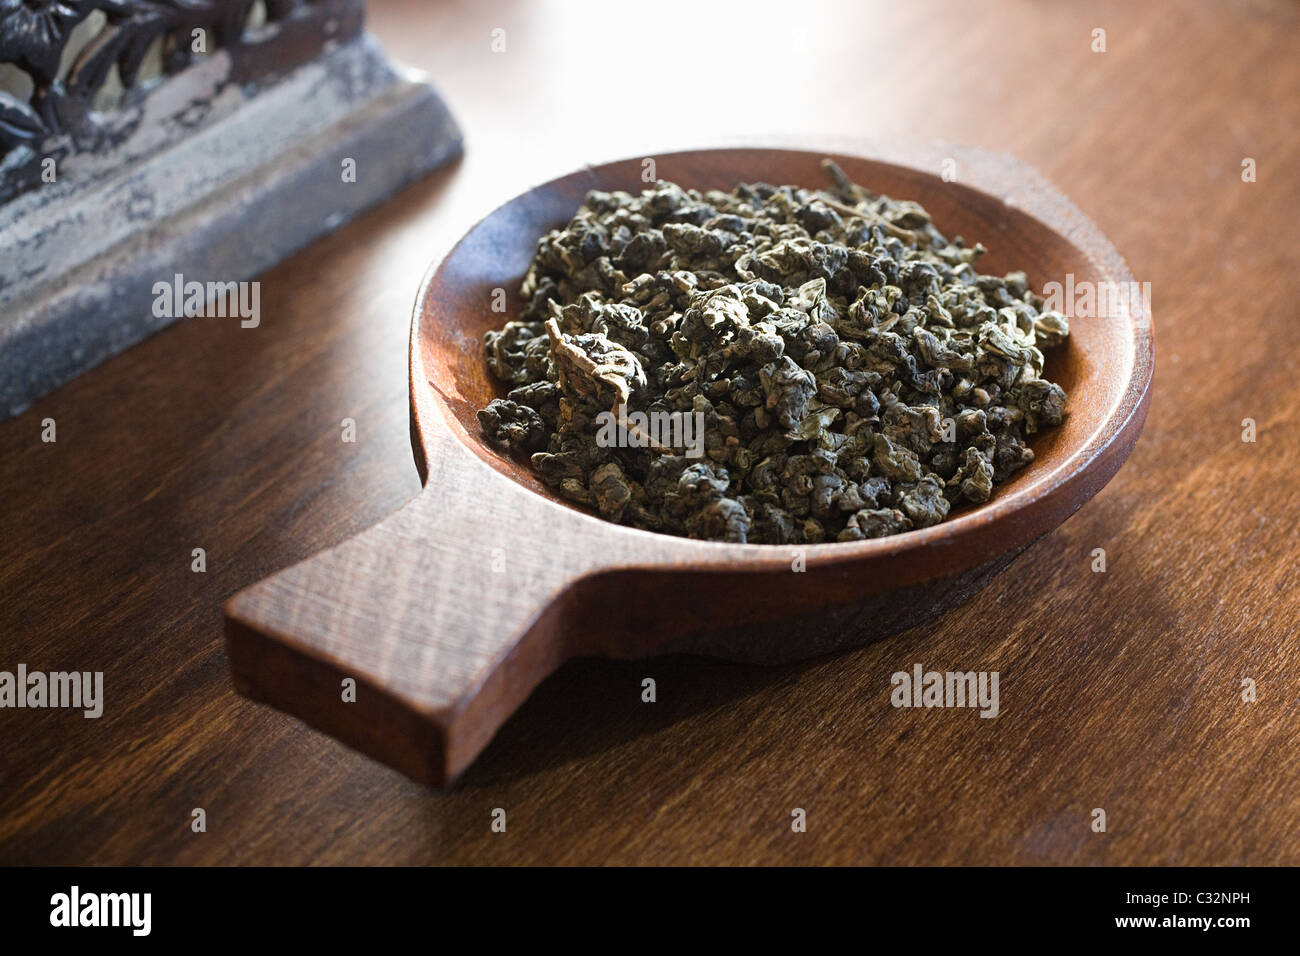 Les feuilles de thé dans un bol en bois Banque D'Images